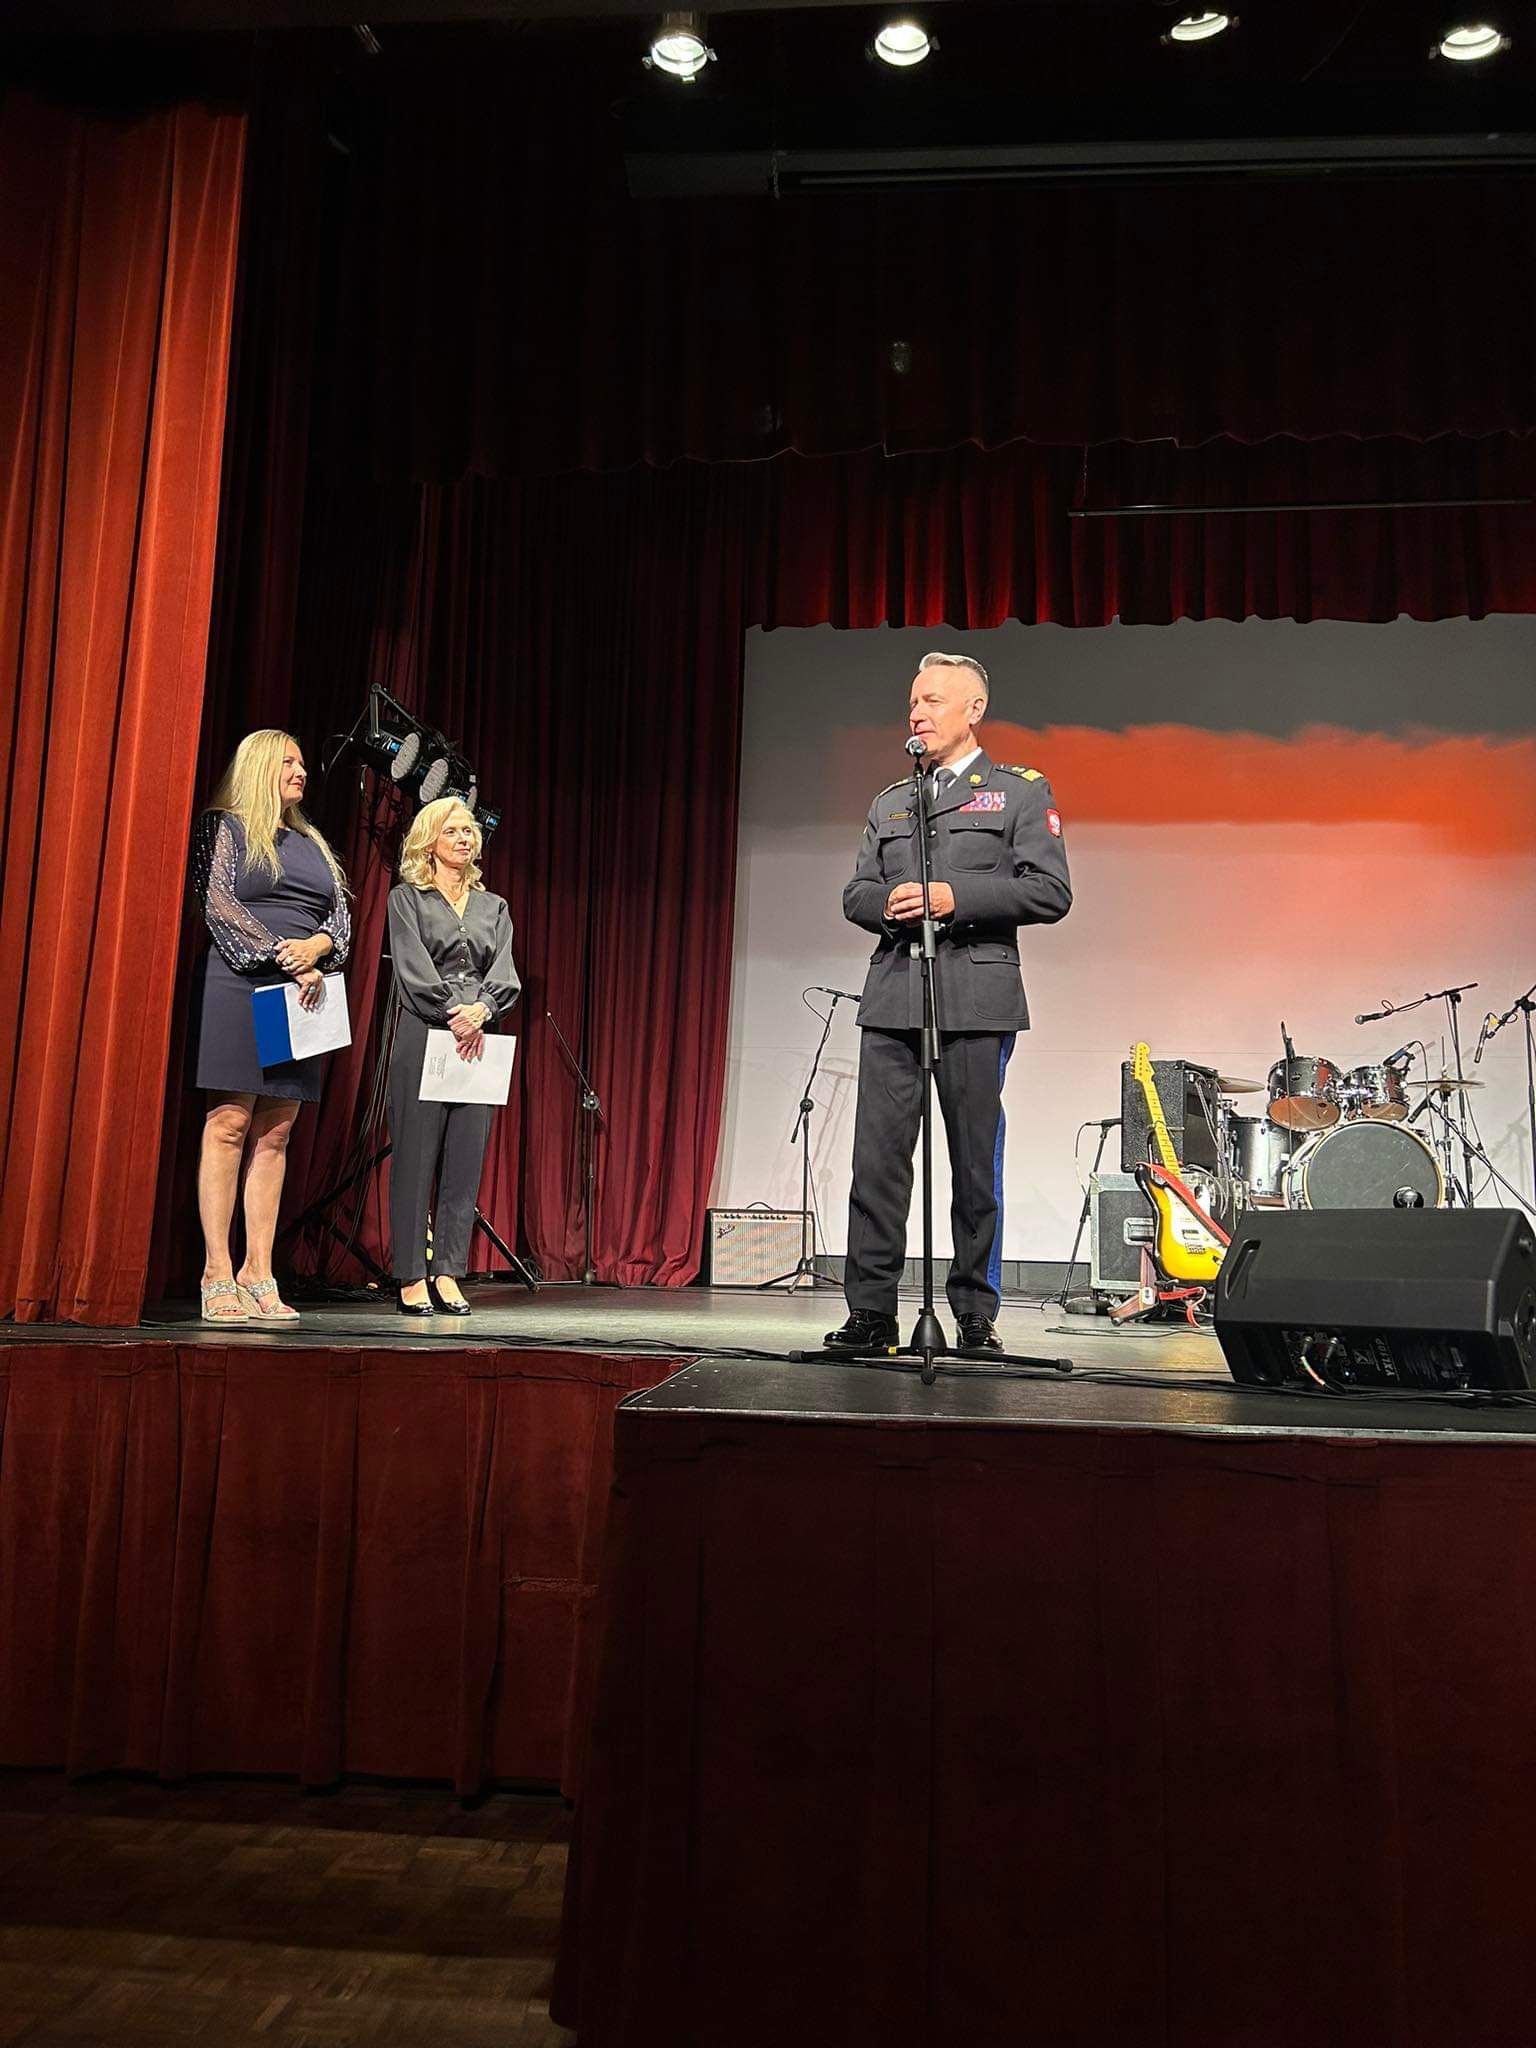 Komendant główny PSP ubrany w mundur galowy przemawia do mikrofonu na scenie, obok stoją dwie kobiety w ciemnych ubraniach